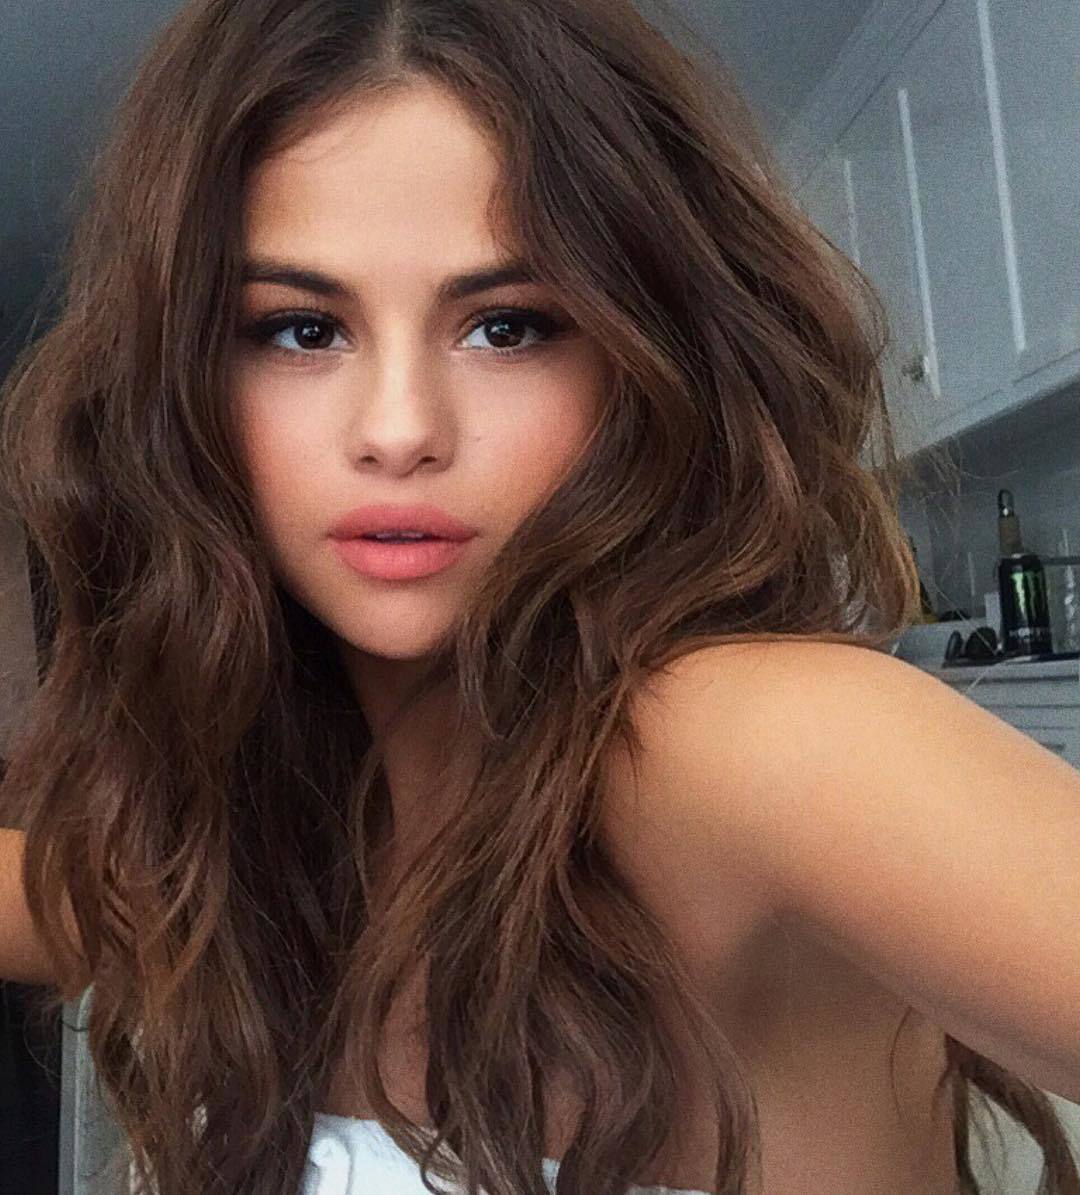 Con este selfie, Selena agradeci a sus seguidores haber alcanzado...